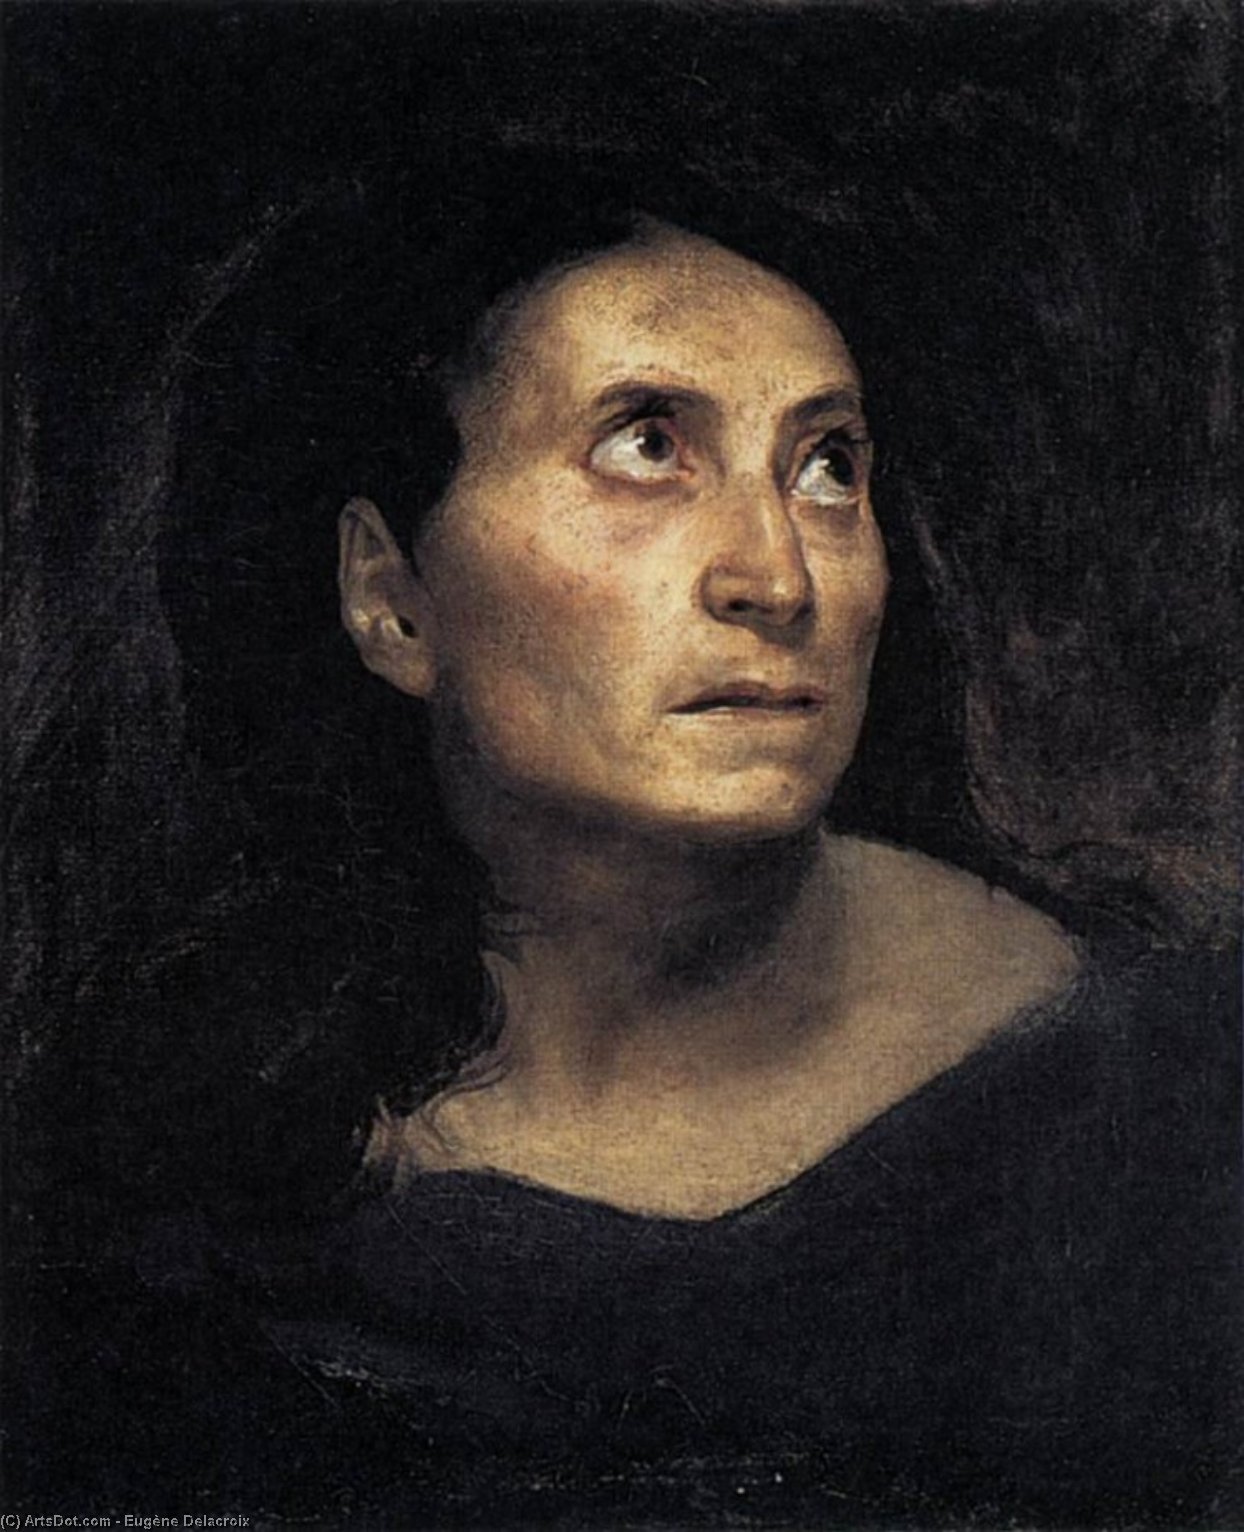 Bestellen Museumsqualität Prints Eine verrückte Frau, 1822 von Eugène Delacroix (1798-1863, France) | ArtsDot.com